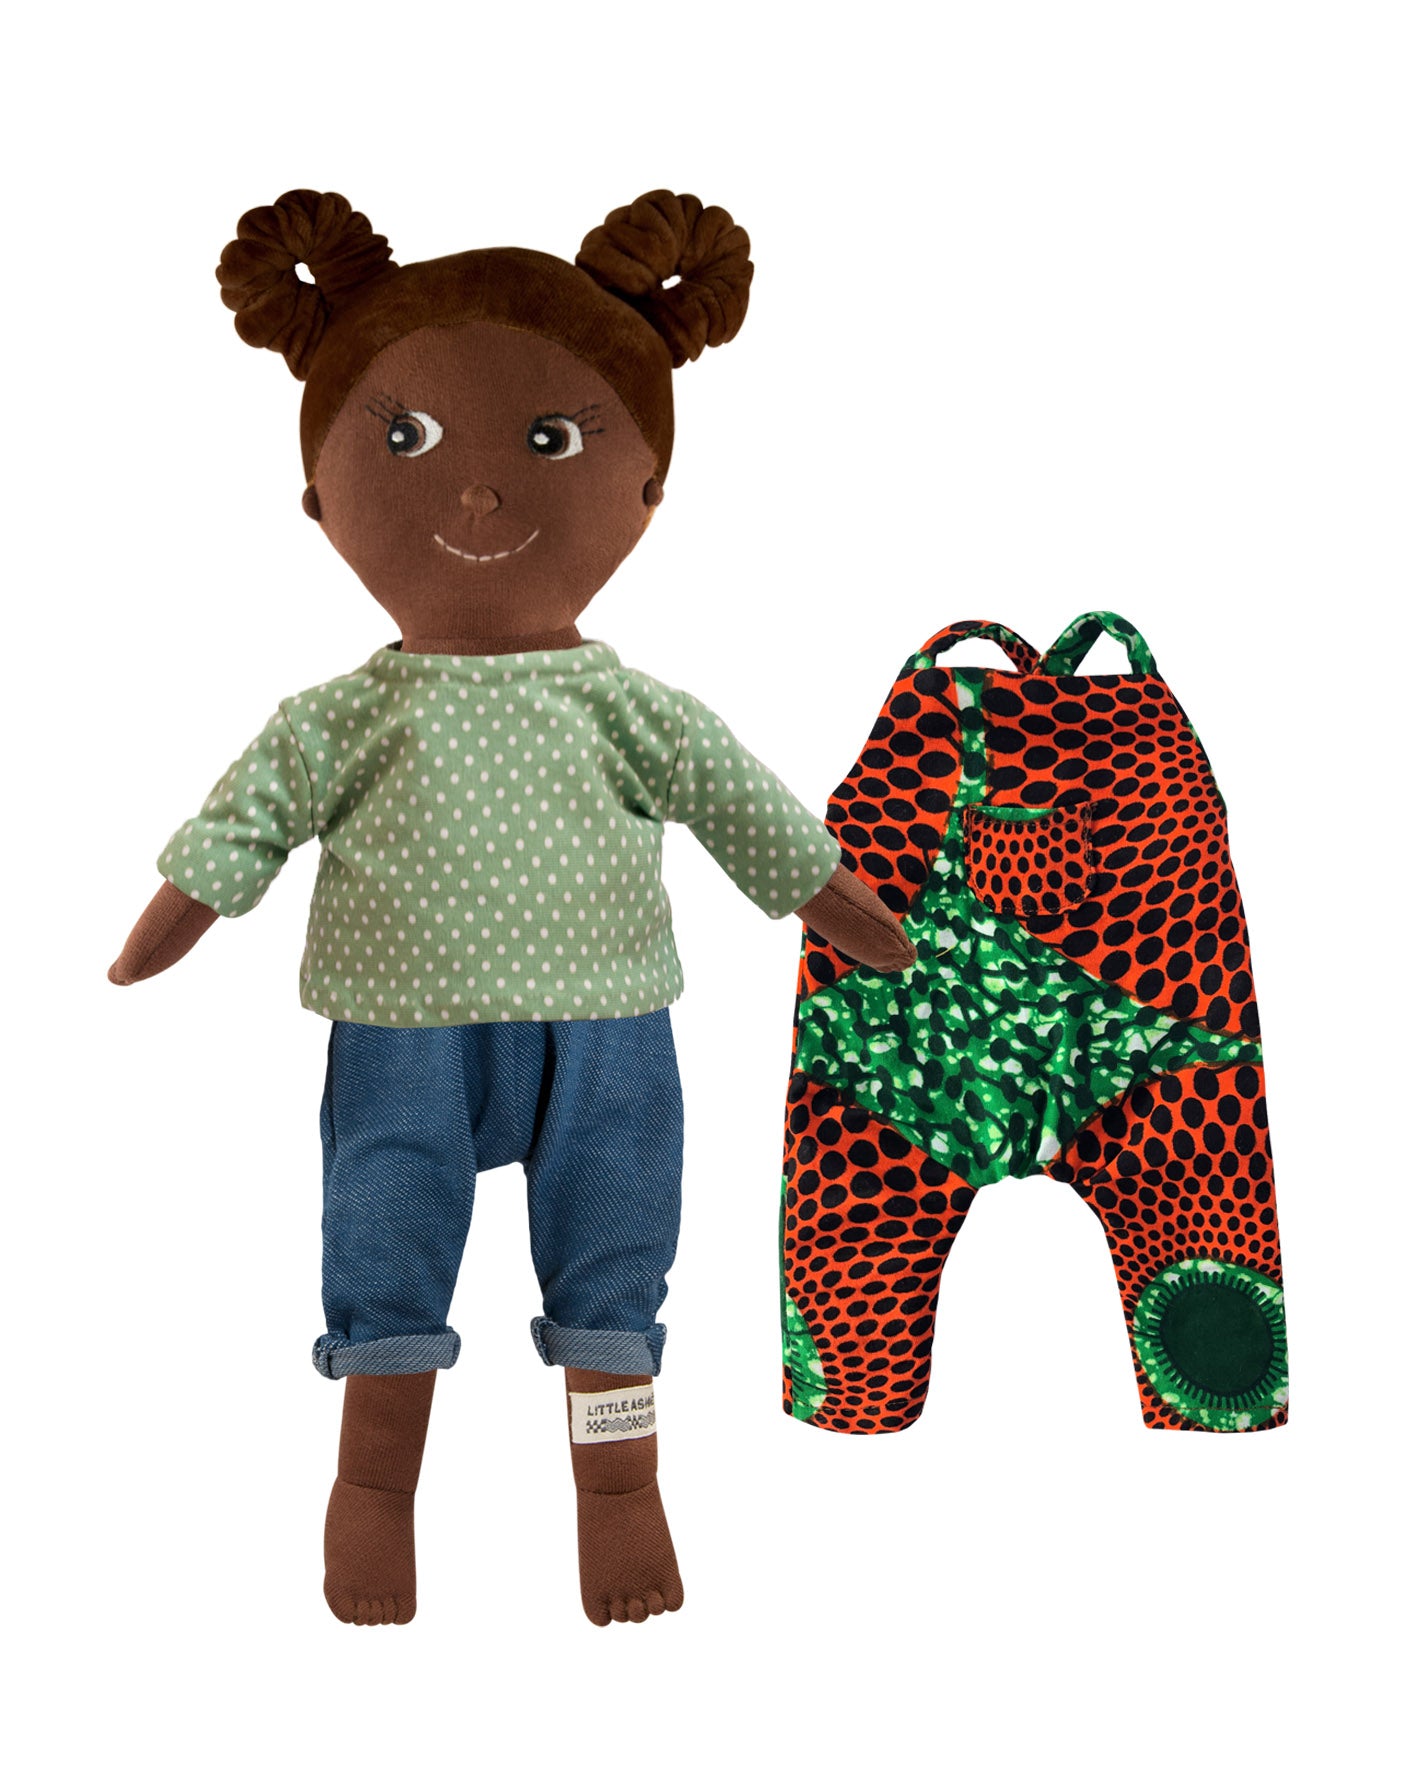 Kinderpuppe mit Haarzöpfen und Puppen Outfit aus Baumwolle